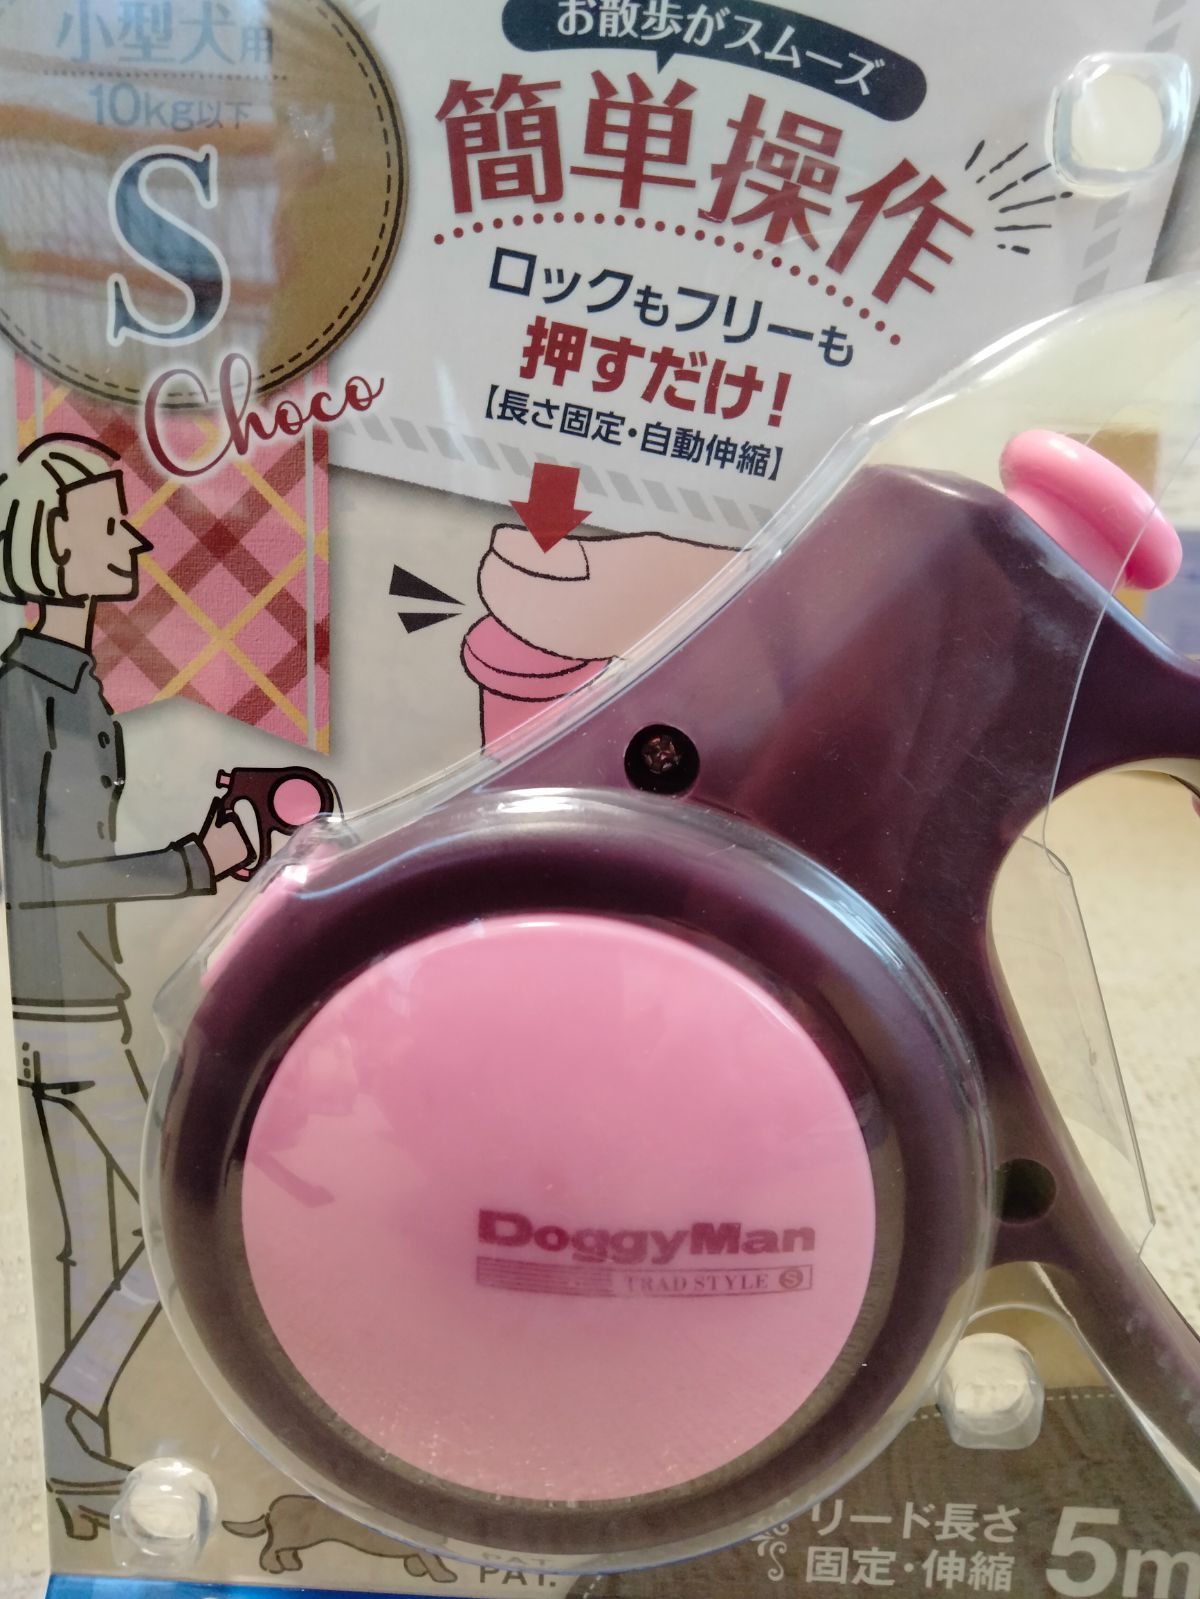 【色: ピンク&ブラック】ドギーマン ドギーウォーカートラッドスタイル ピンク&